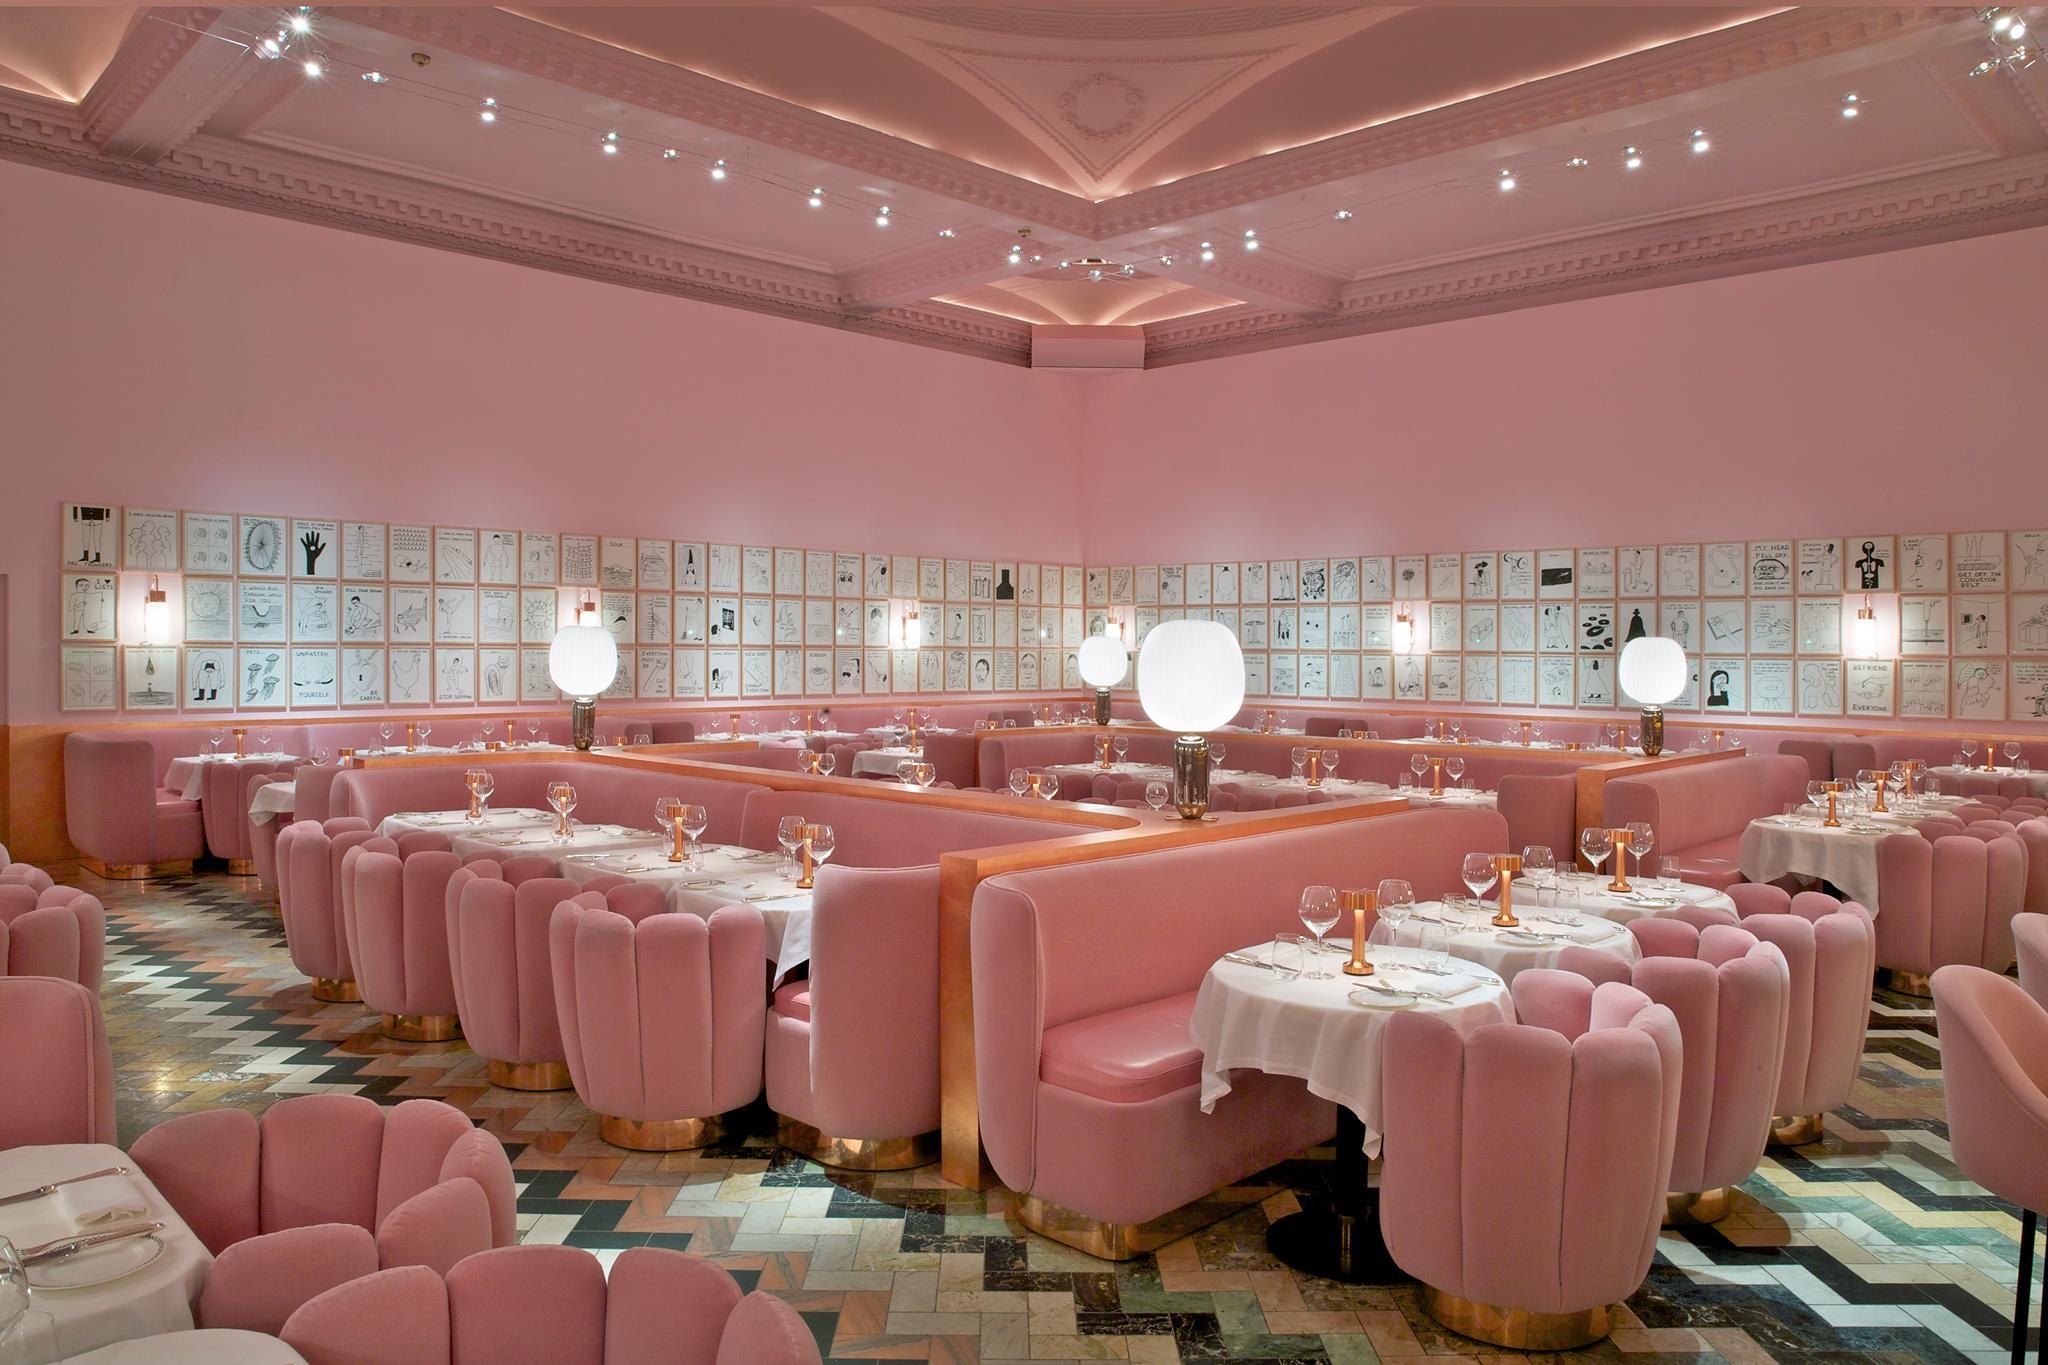 TREND: 5 roze restaurants